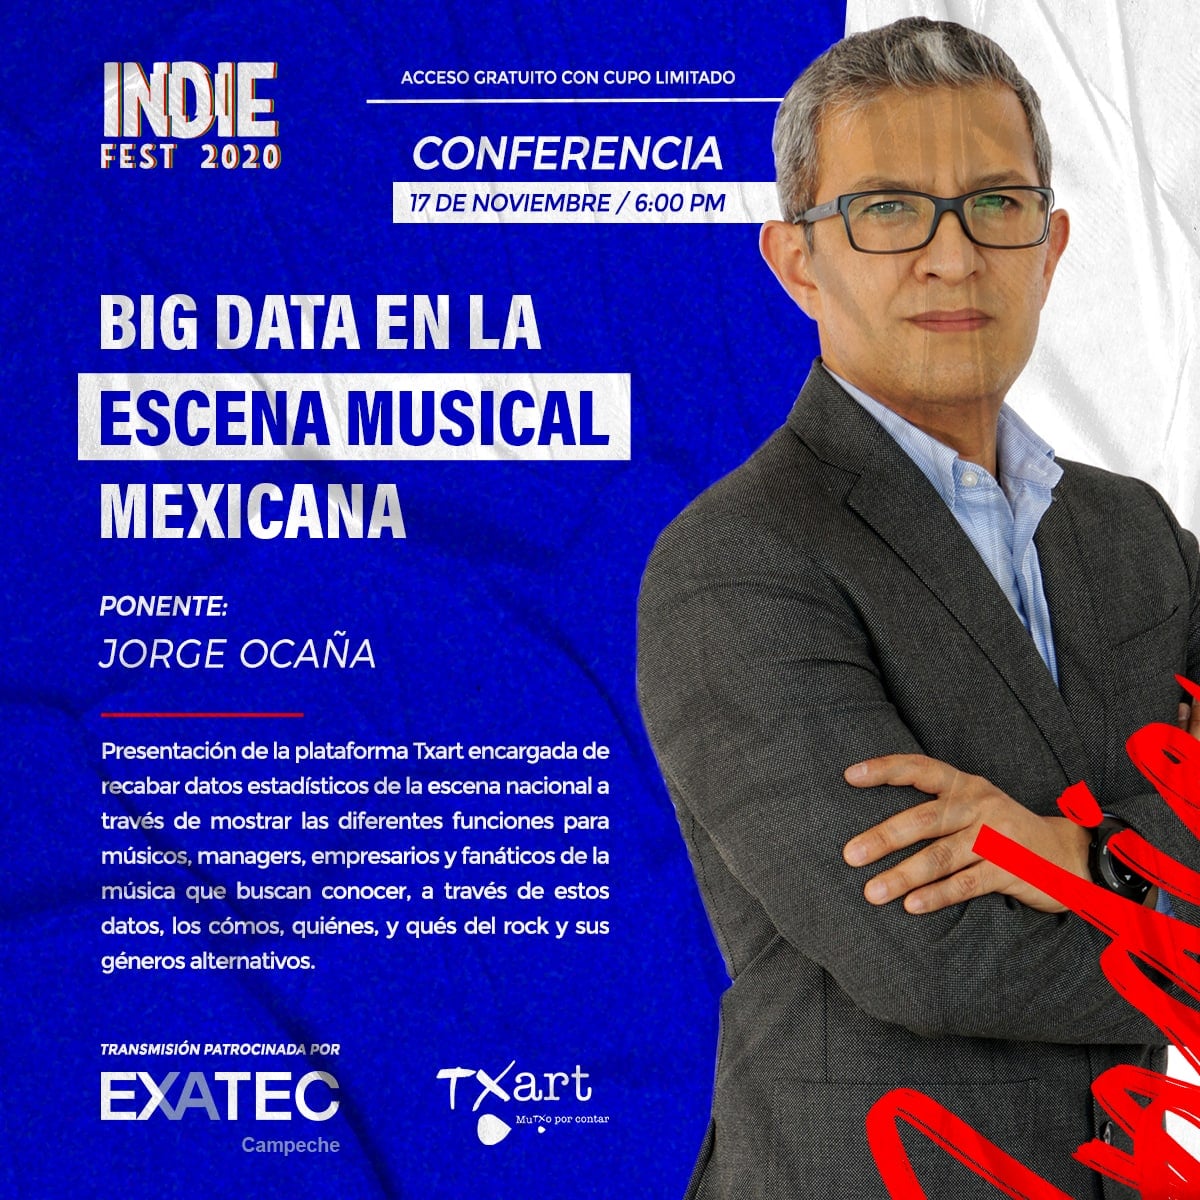  Big Data en la escena musical mexicana